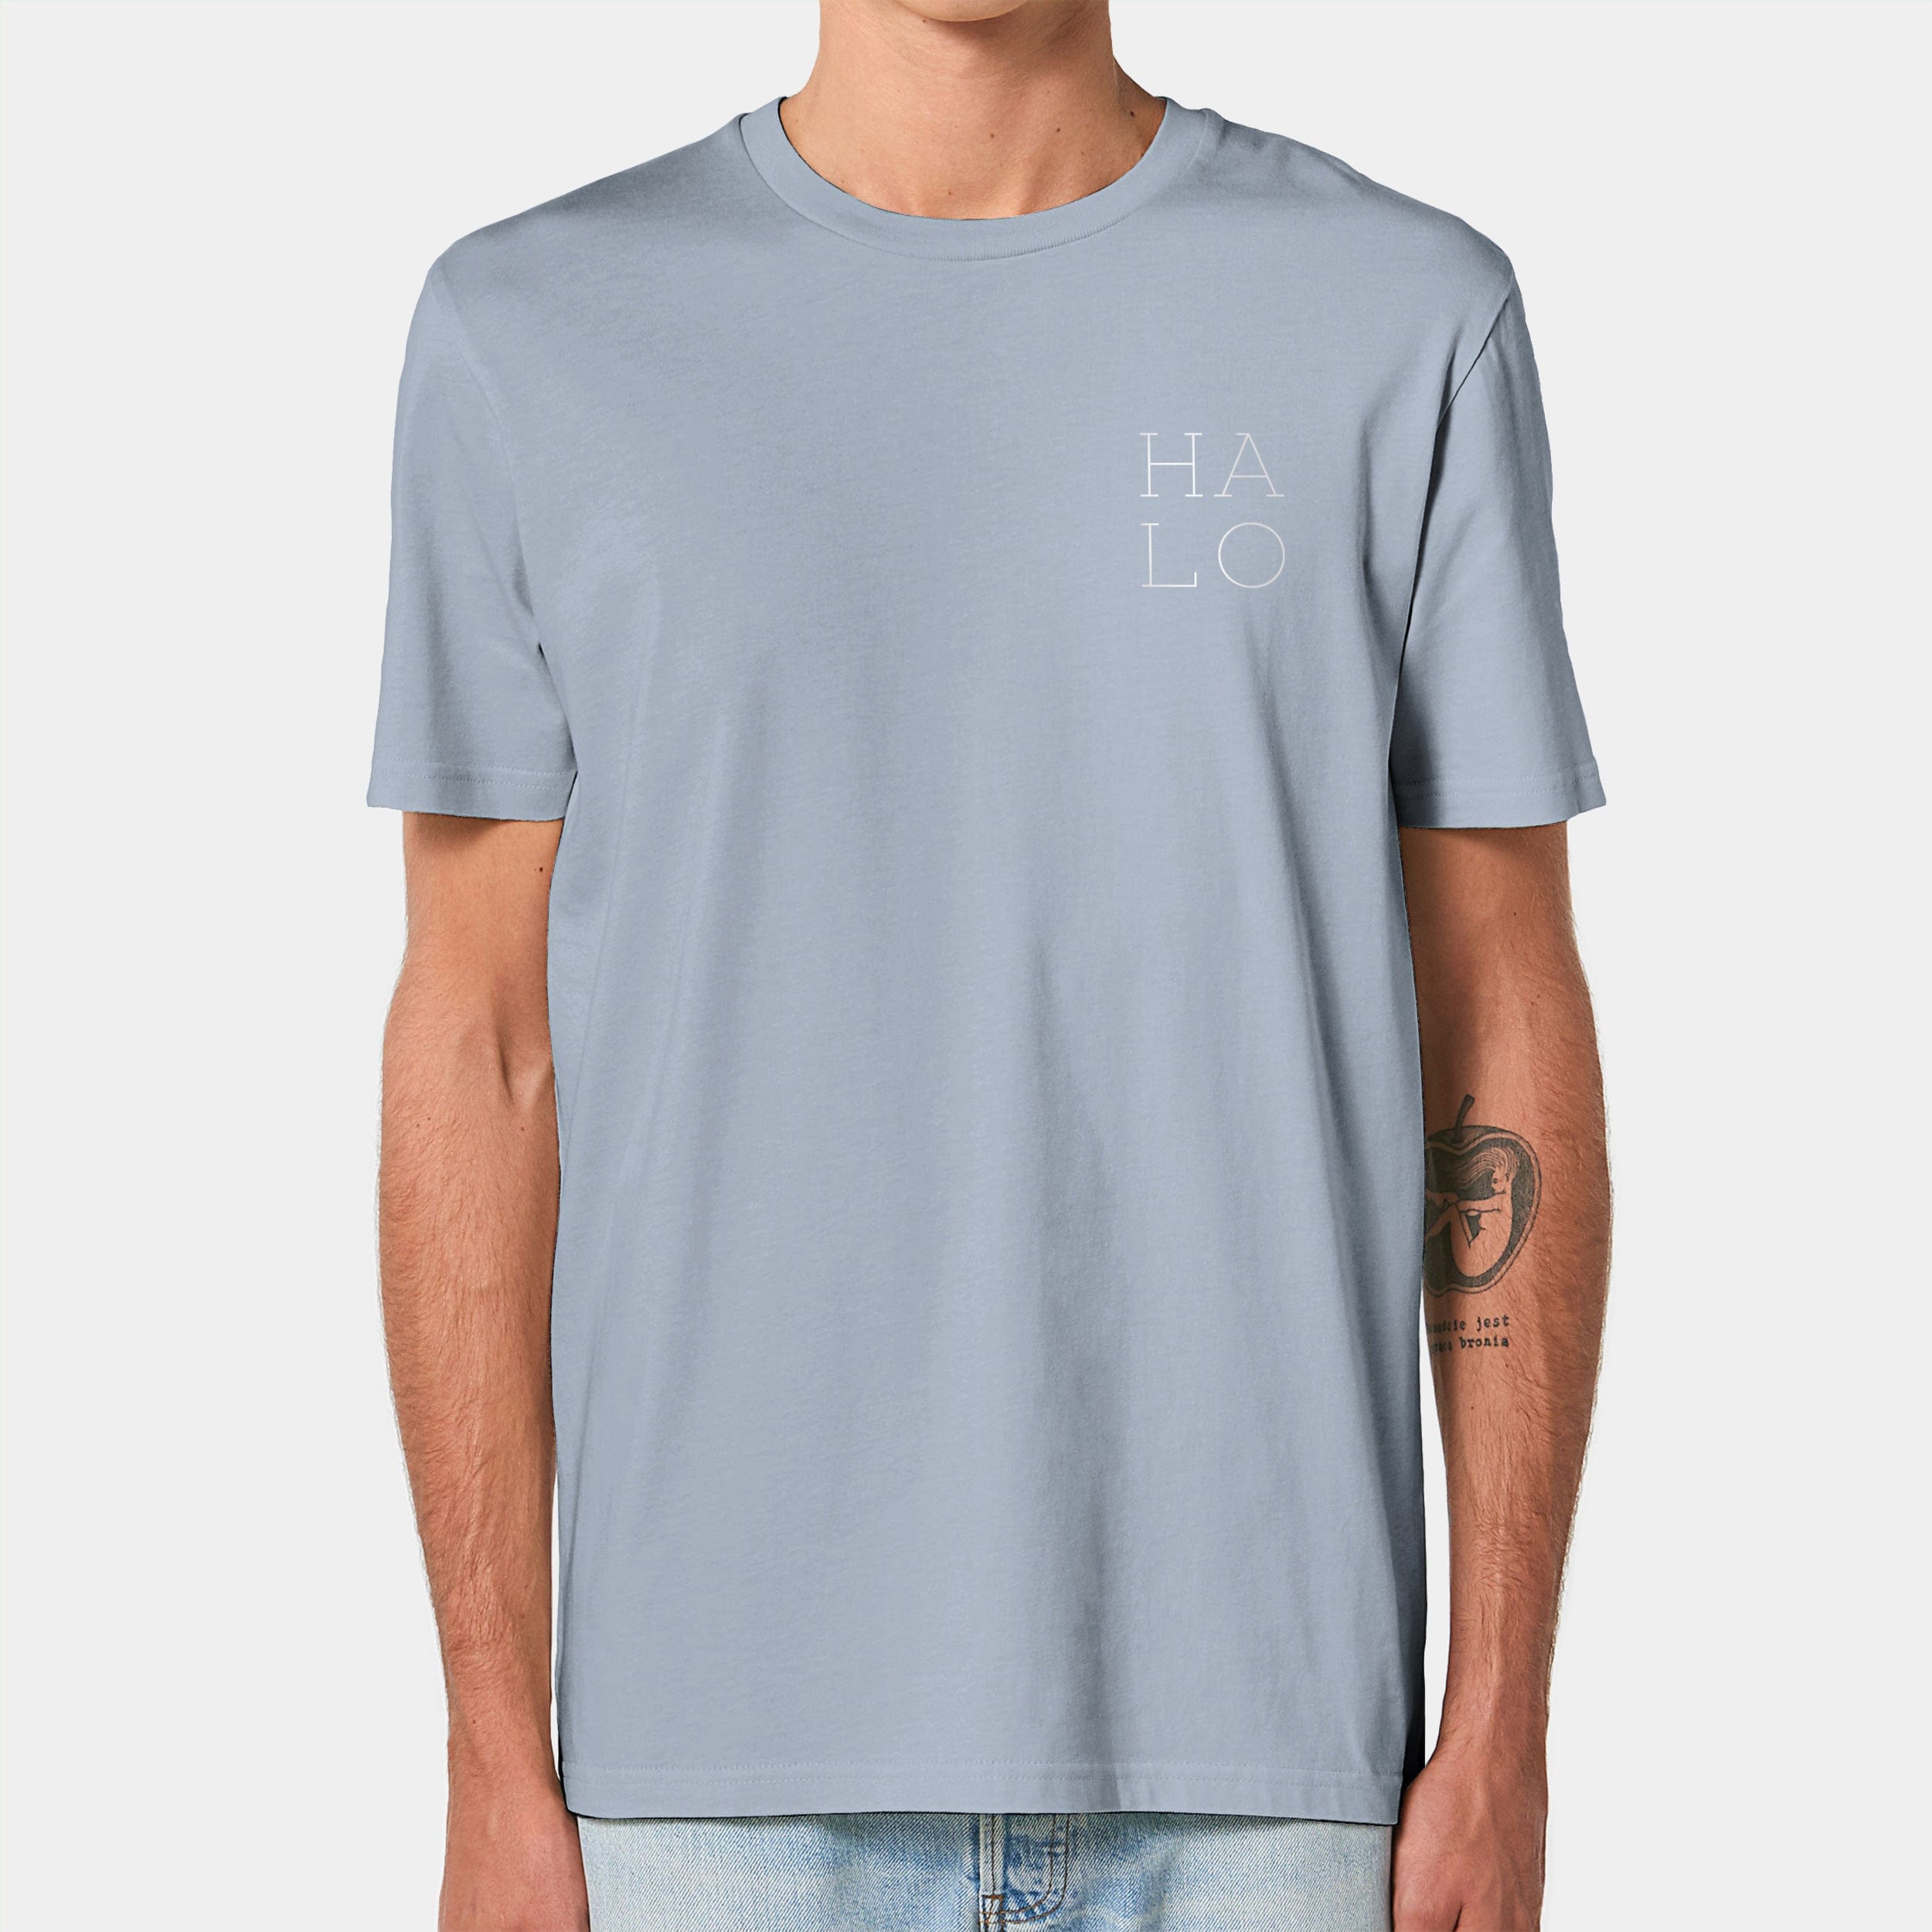 HEITER & LÄSSIG T-Shirt "HALO" XXS / serene blue - aus nachhaltiger und fairer Produktion